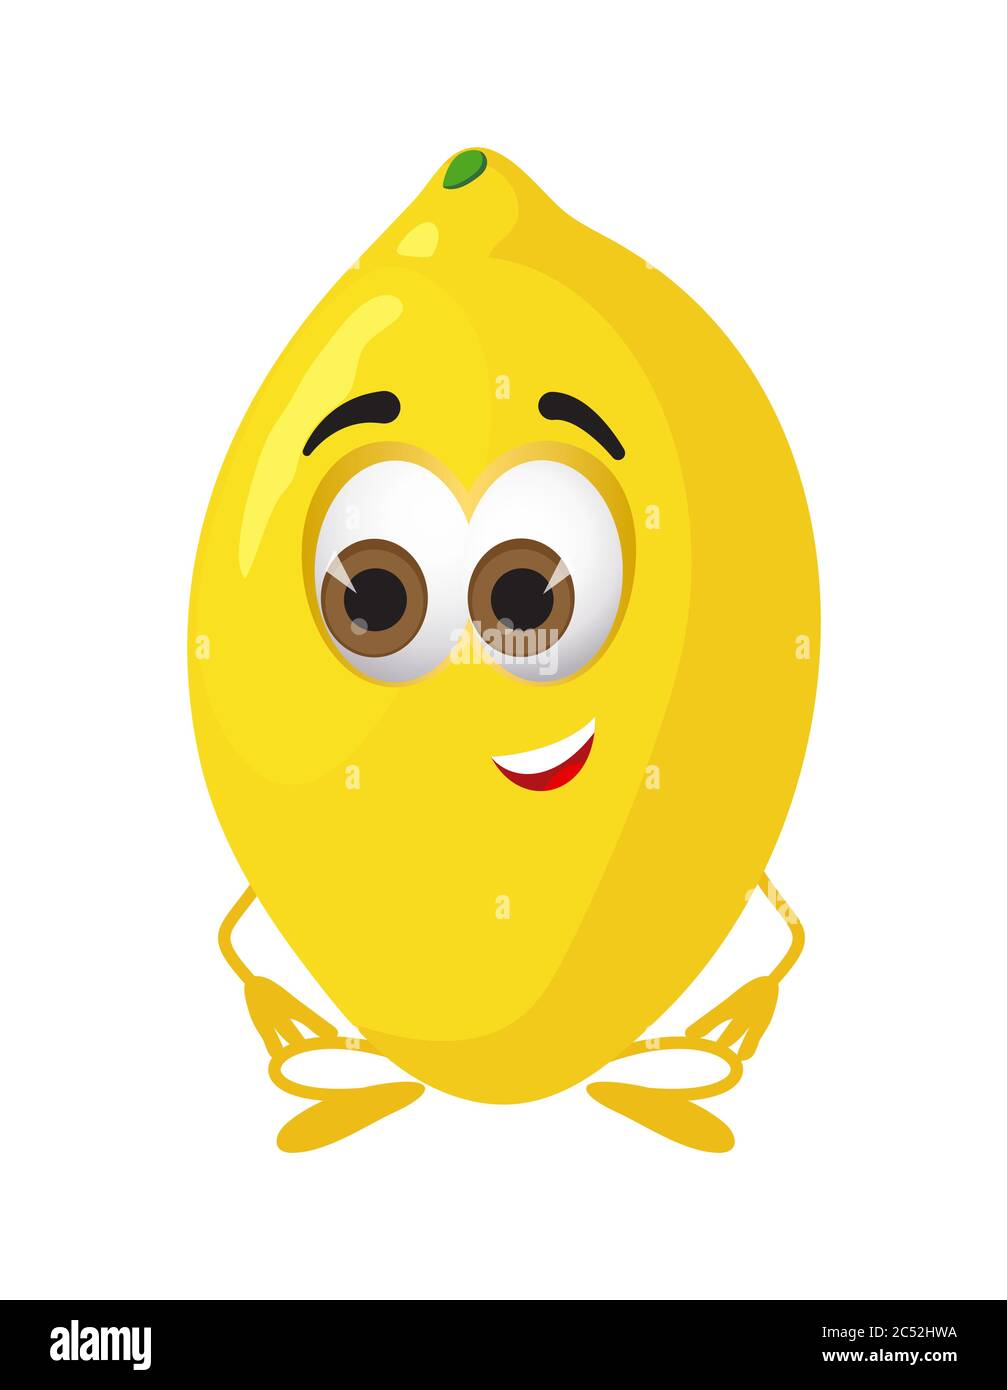 Drôle de citron avec les yeux. Dessin animé drôle de fruits personnages illustration vectorielle plate Illustration de Vecteur